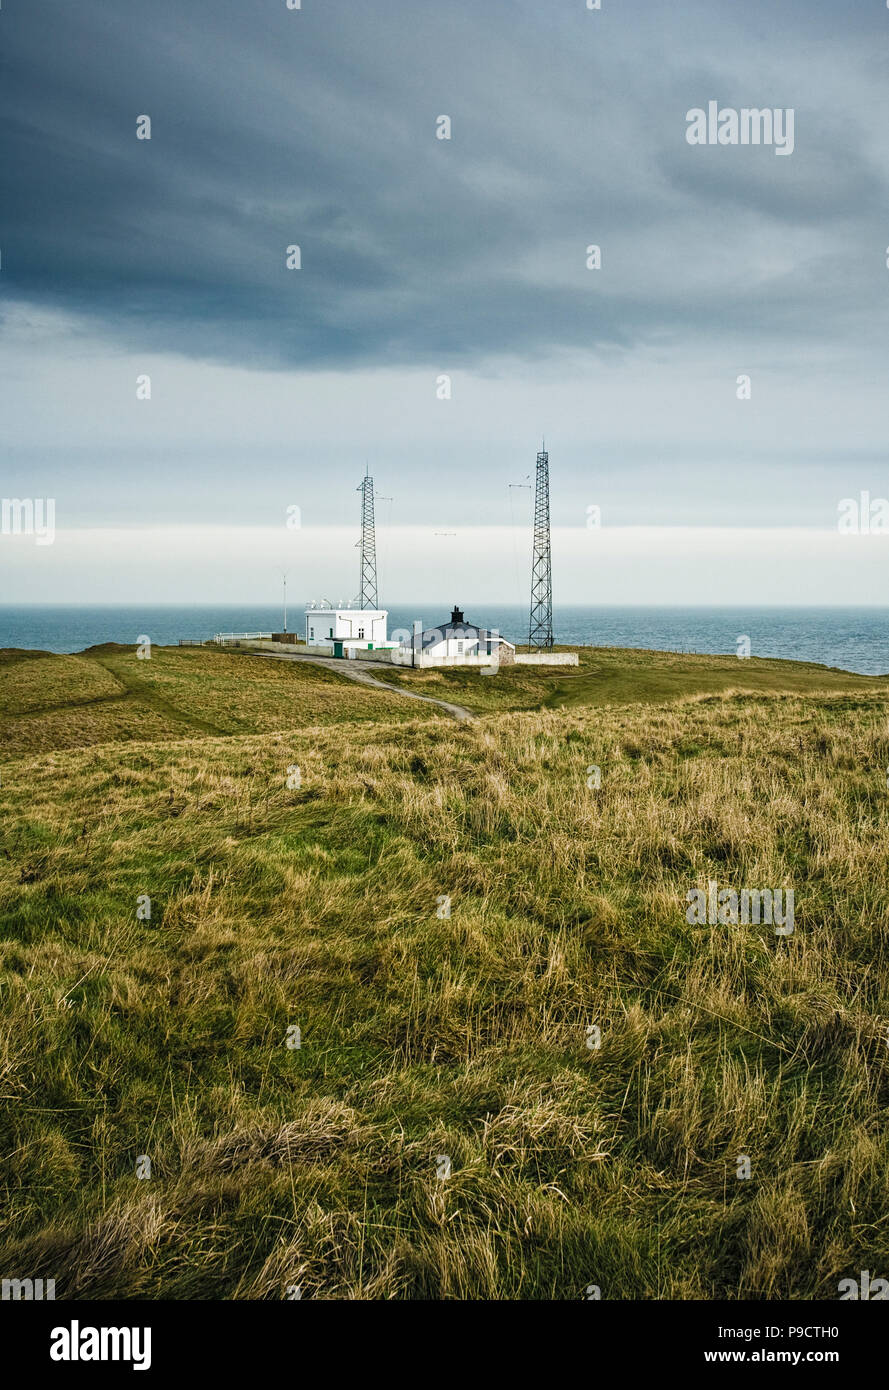 The coastal Fog Signal Station, Flamborough Head, East Yorkshire, England, UK Stock Photo